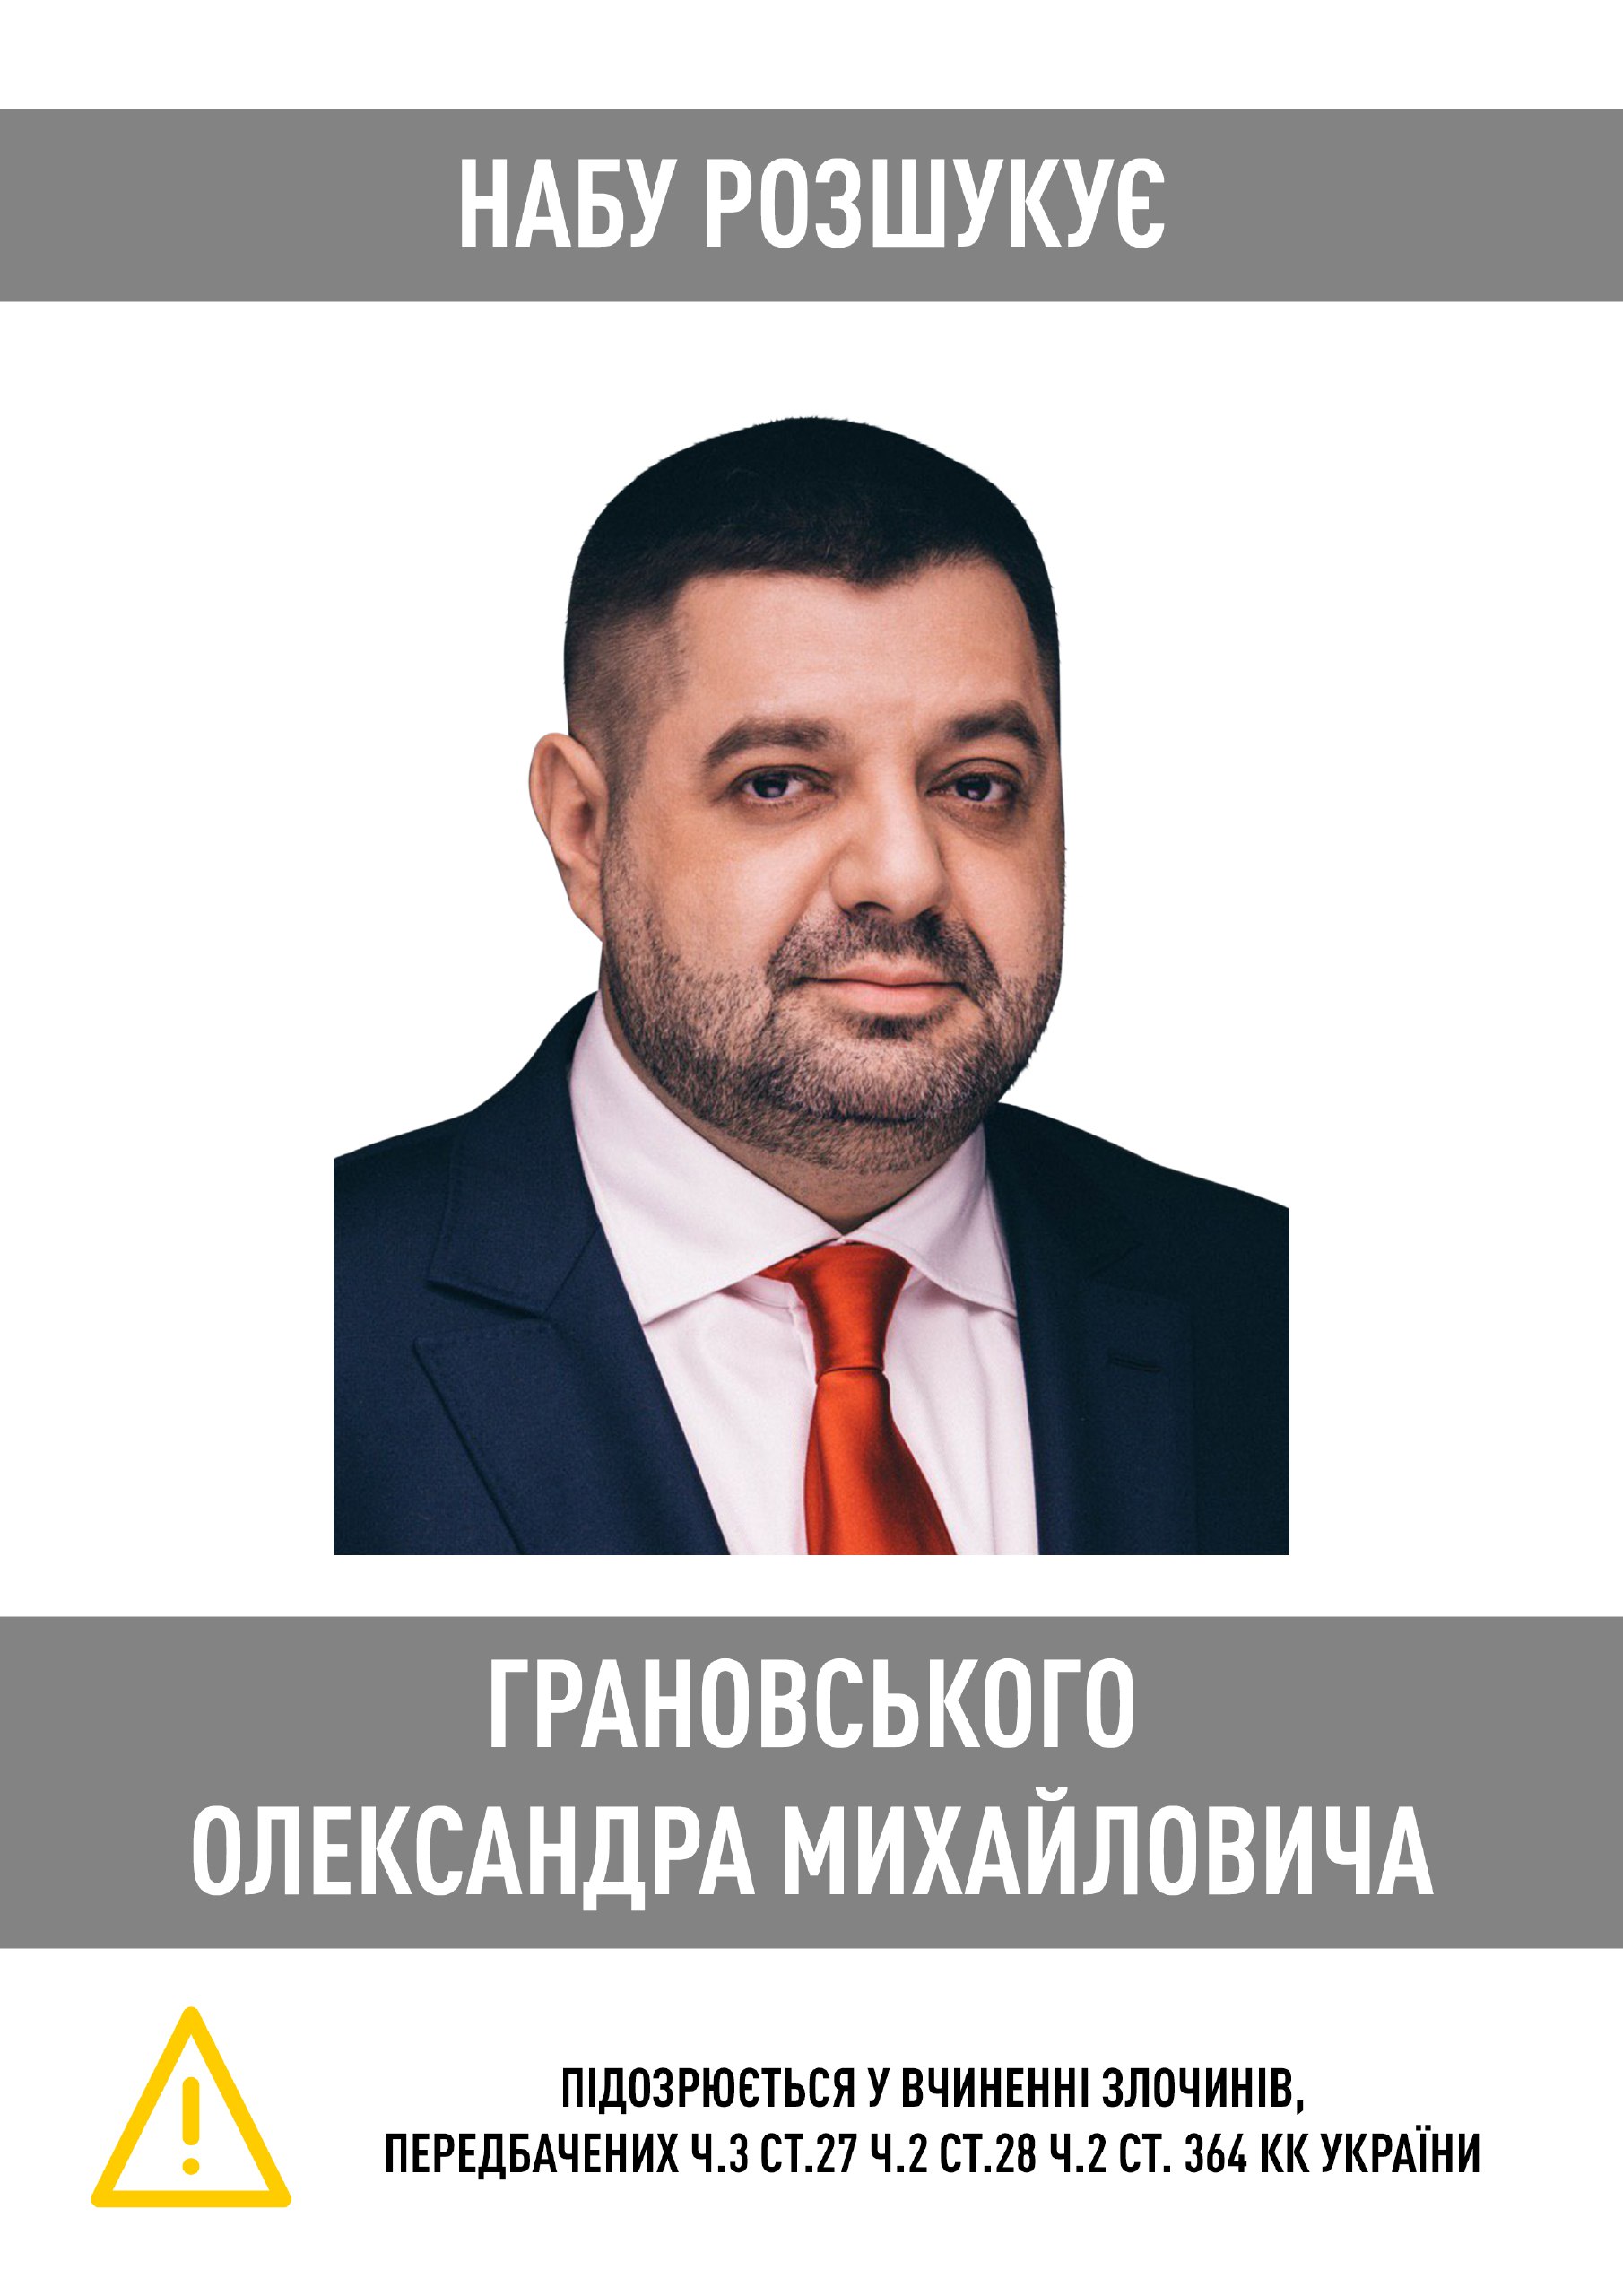 Баллотировавшегося в Харькове экс-нардепа Грановского объявили в розыск – НАБУ